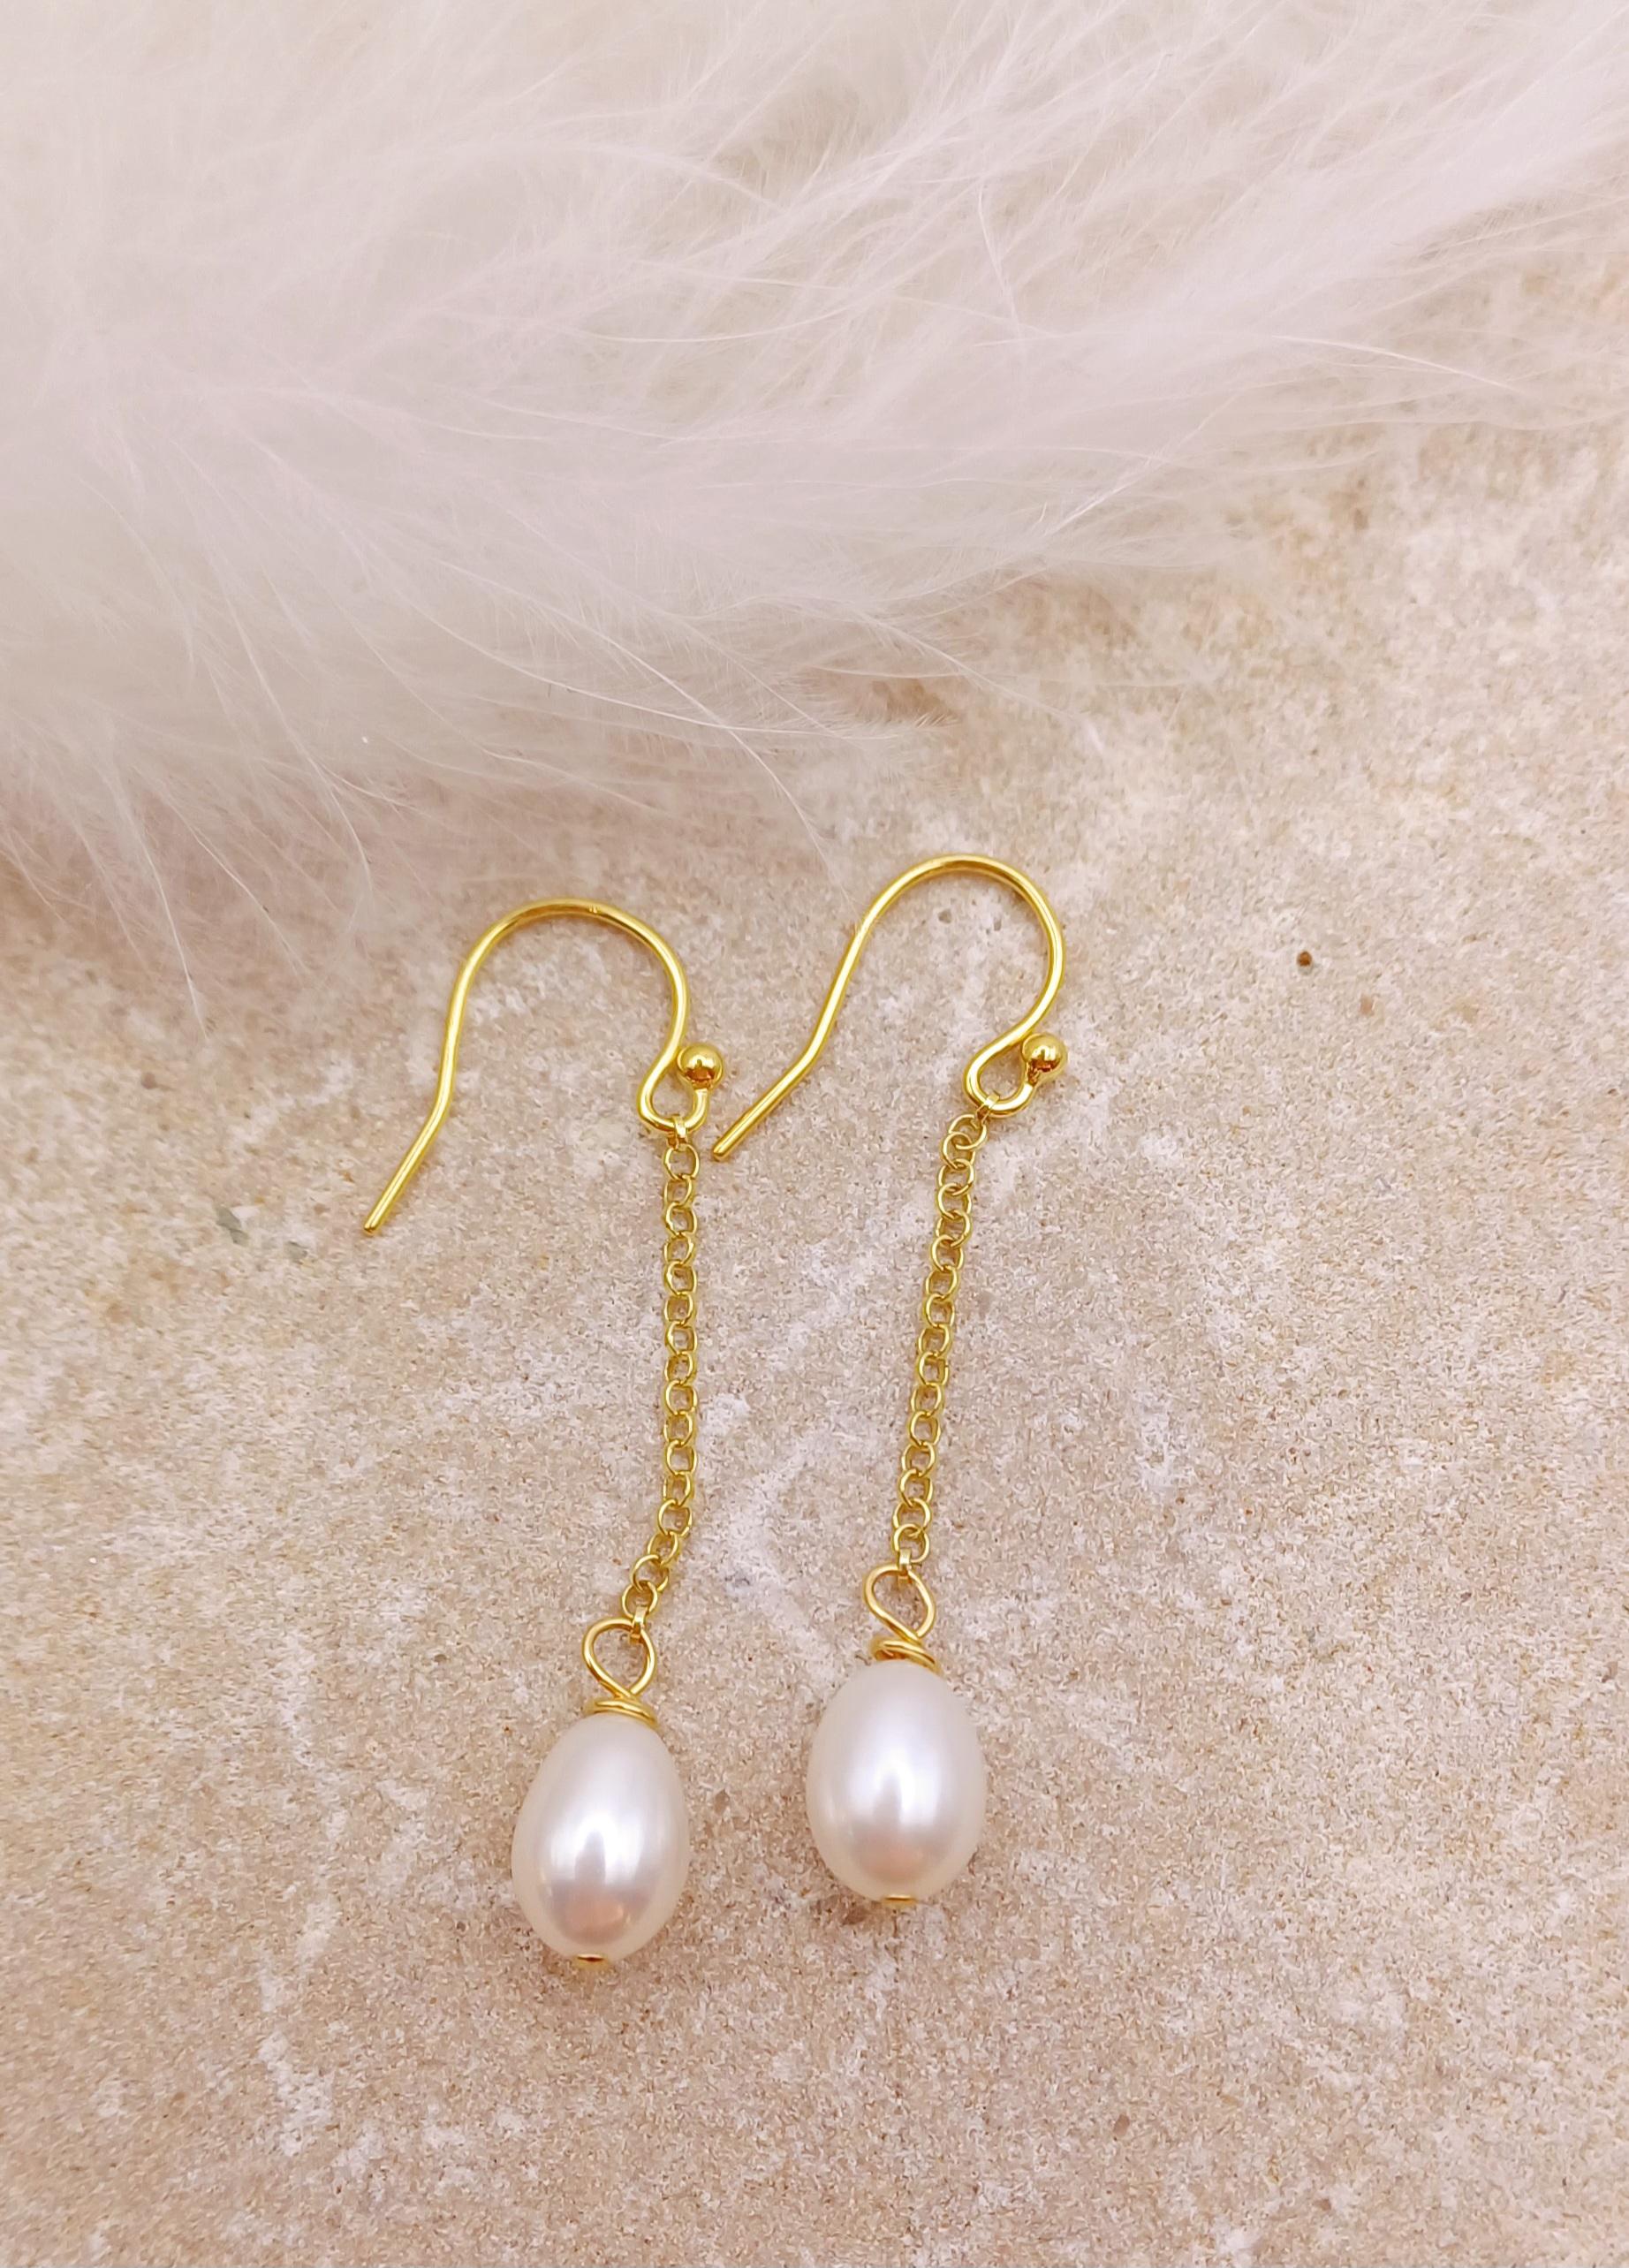 EARRINGS - Gold Chain Pearl Earrings